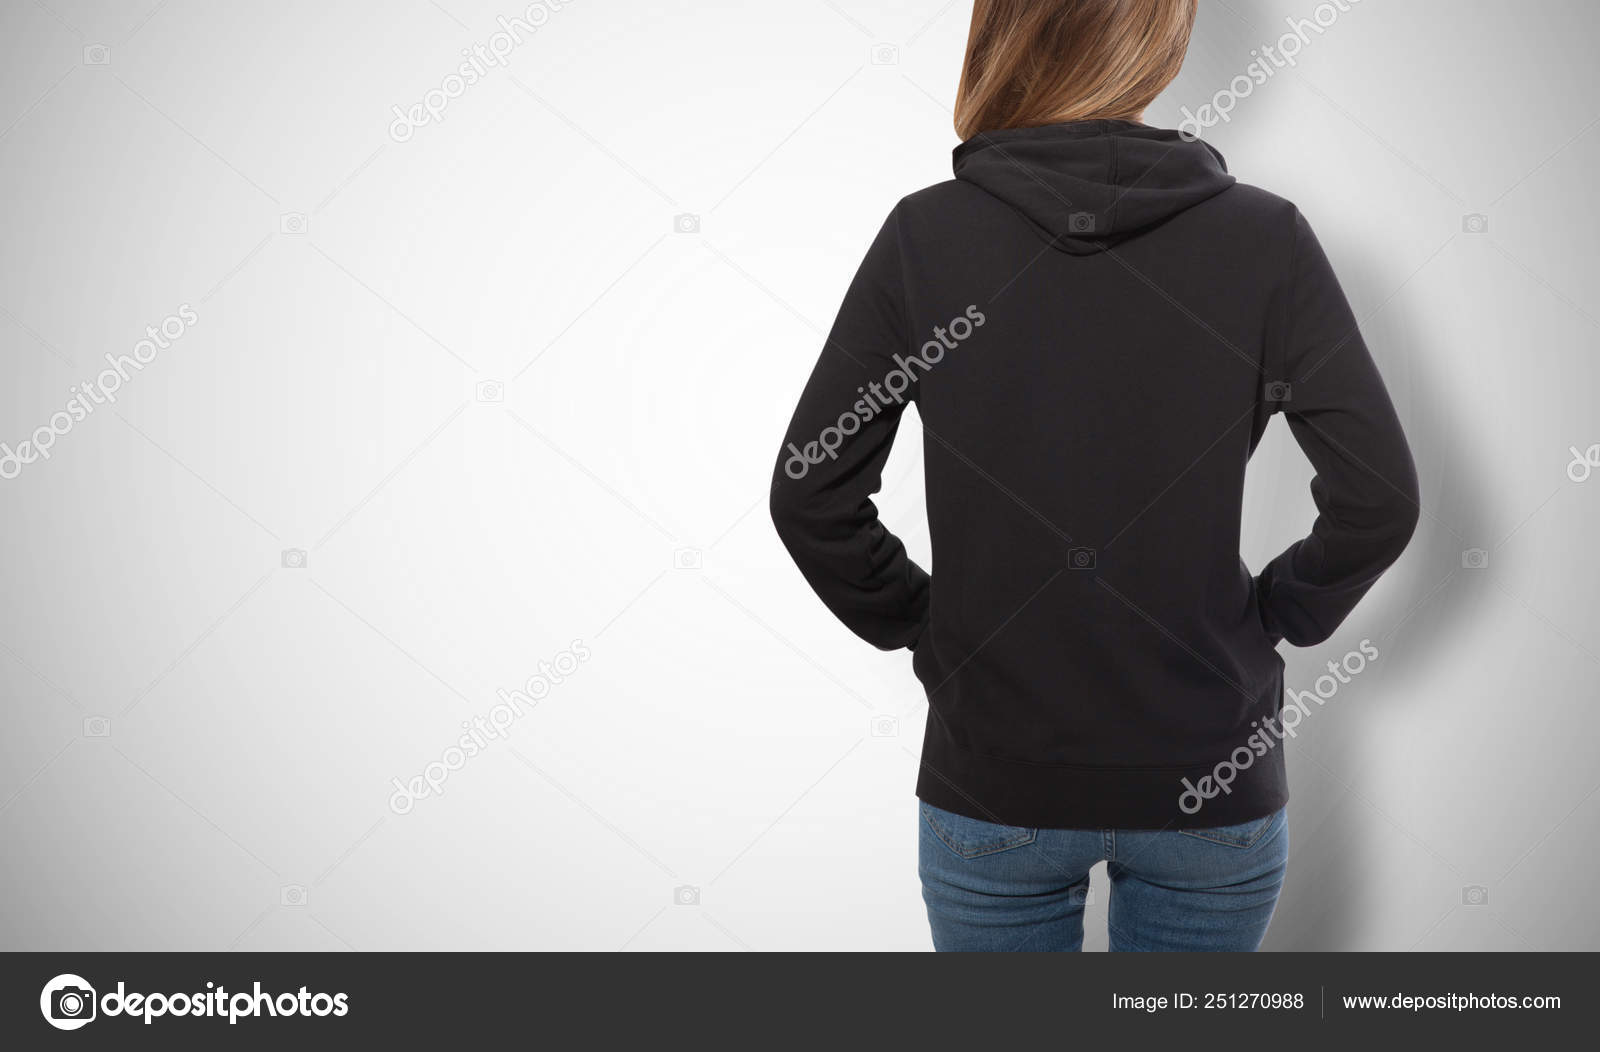 Chica joven en sudadera negra, sudaderas con capucha negro ver aislado  sobre fondo blanco .: fotografía de stock © victoreus #251270988